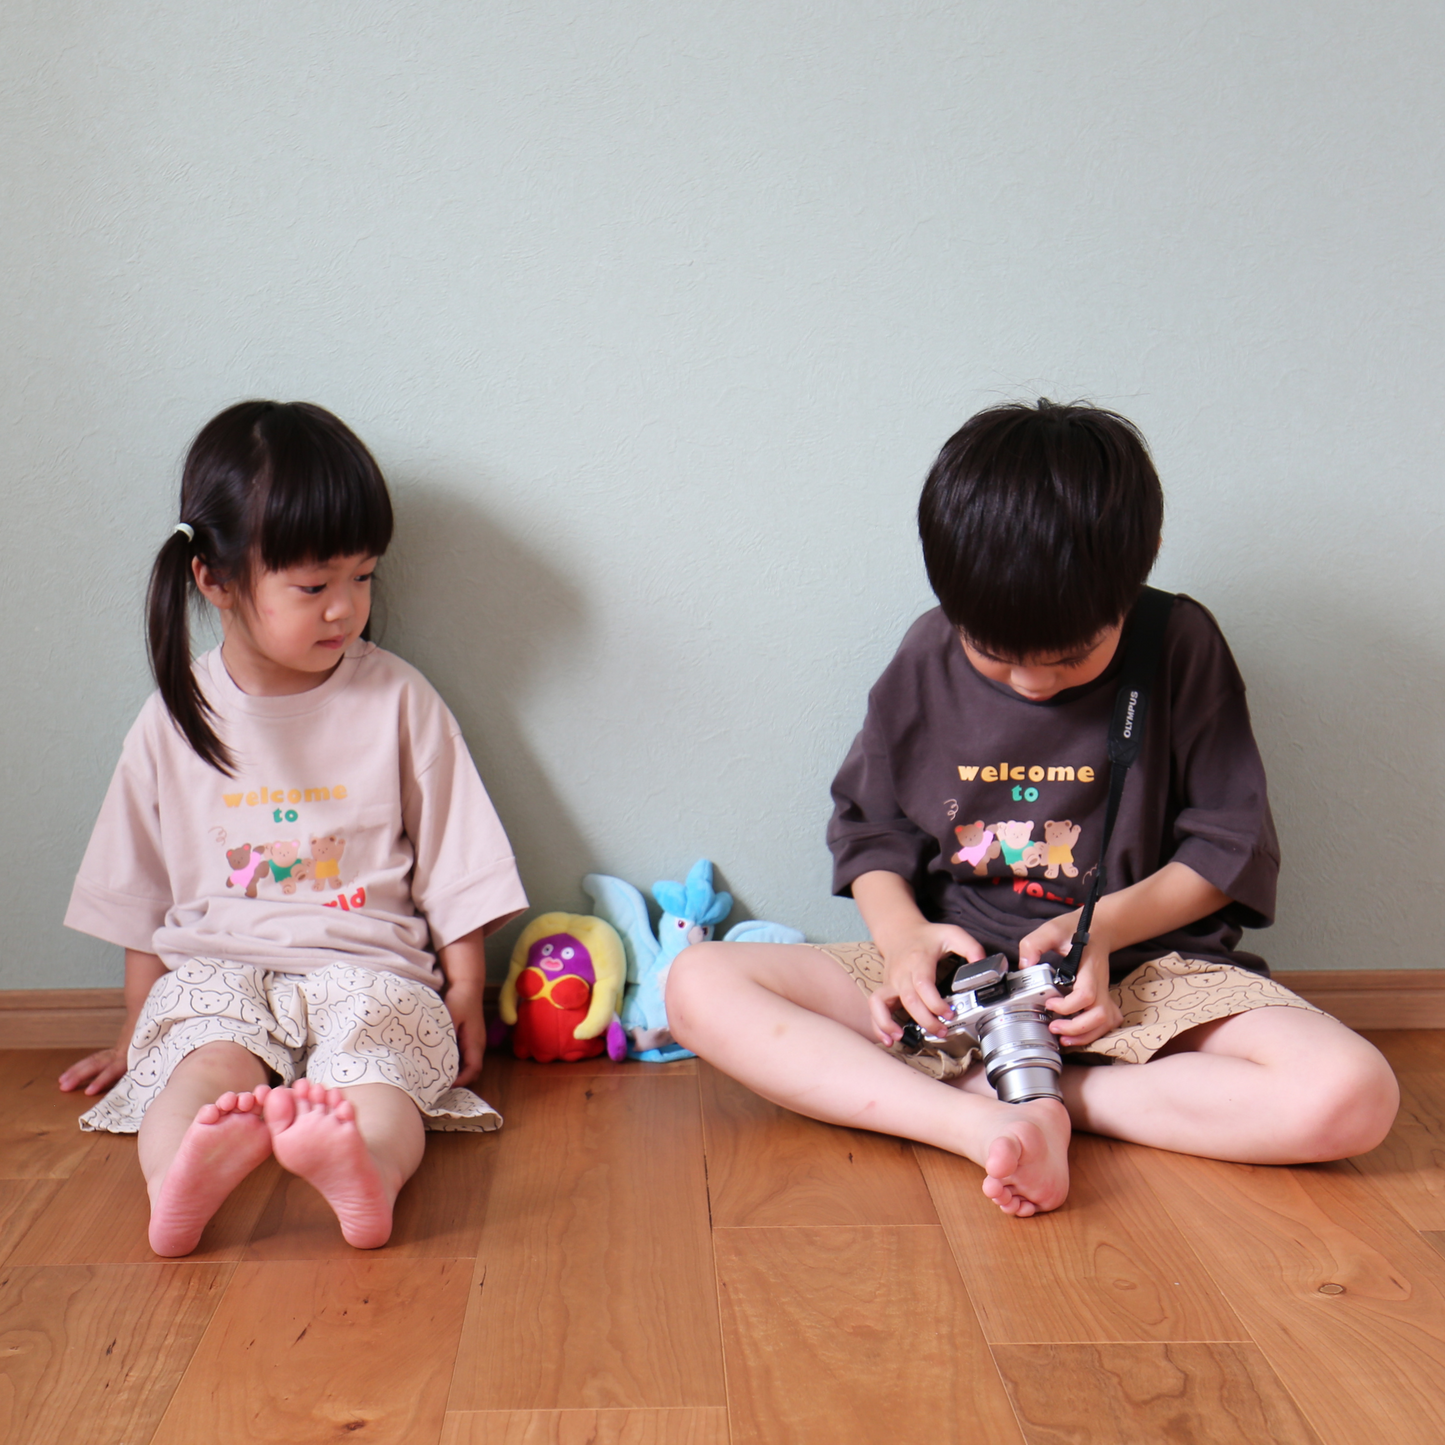 くまさん プリント Tシャツ / three bears Tee (こども服) - kids clothes shop GUZUGUZU